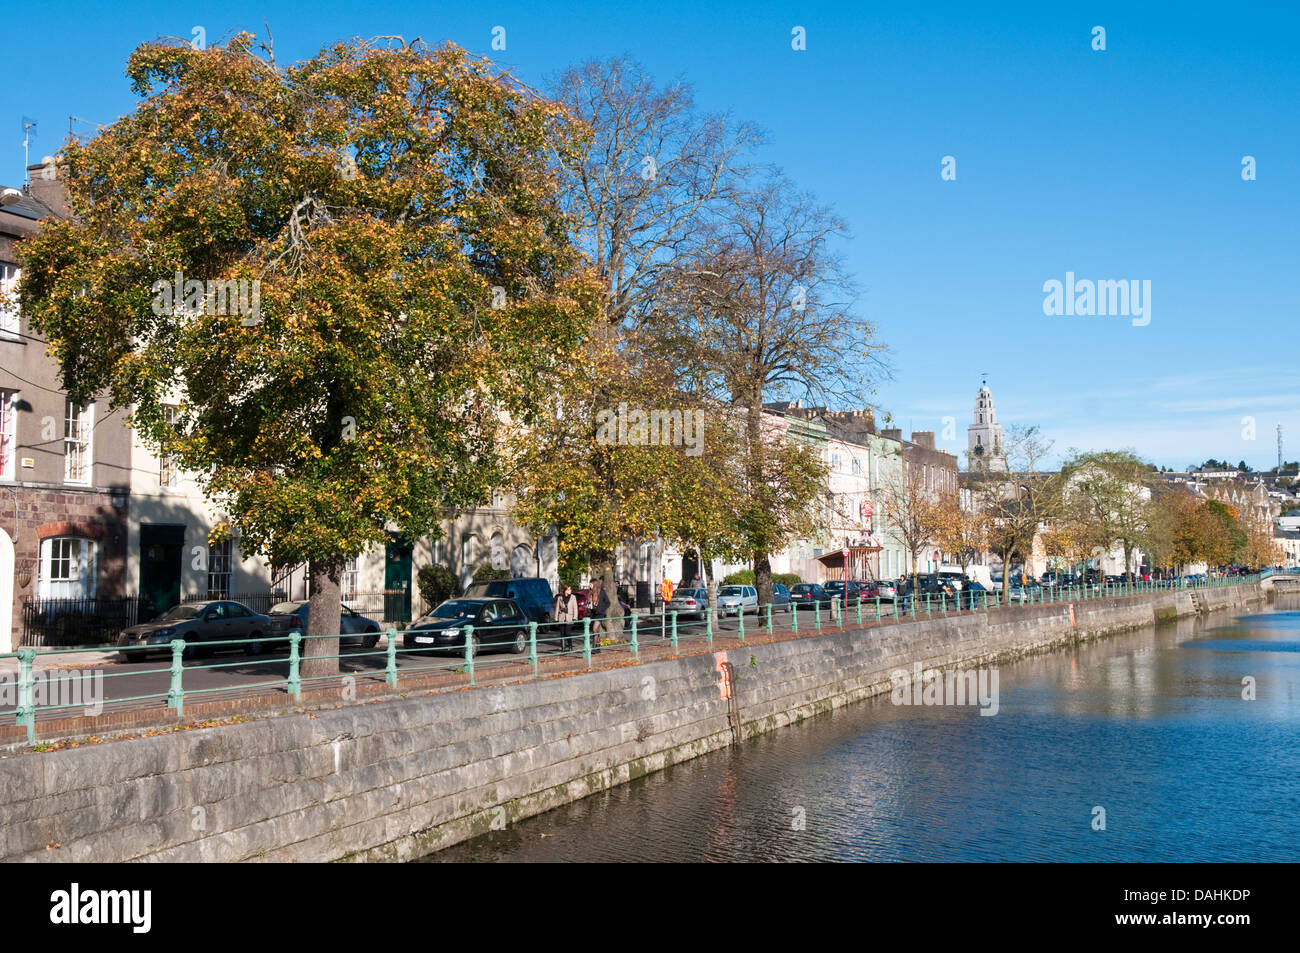 Afficher le long de la rivière North Mall Lee dans le centre-ville de Cork, Irlande sur une journée ensoleillée Banque D'Images